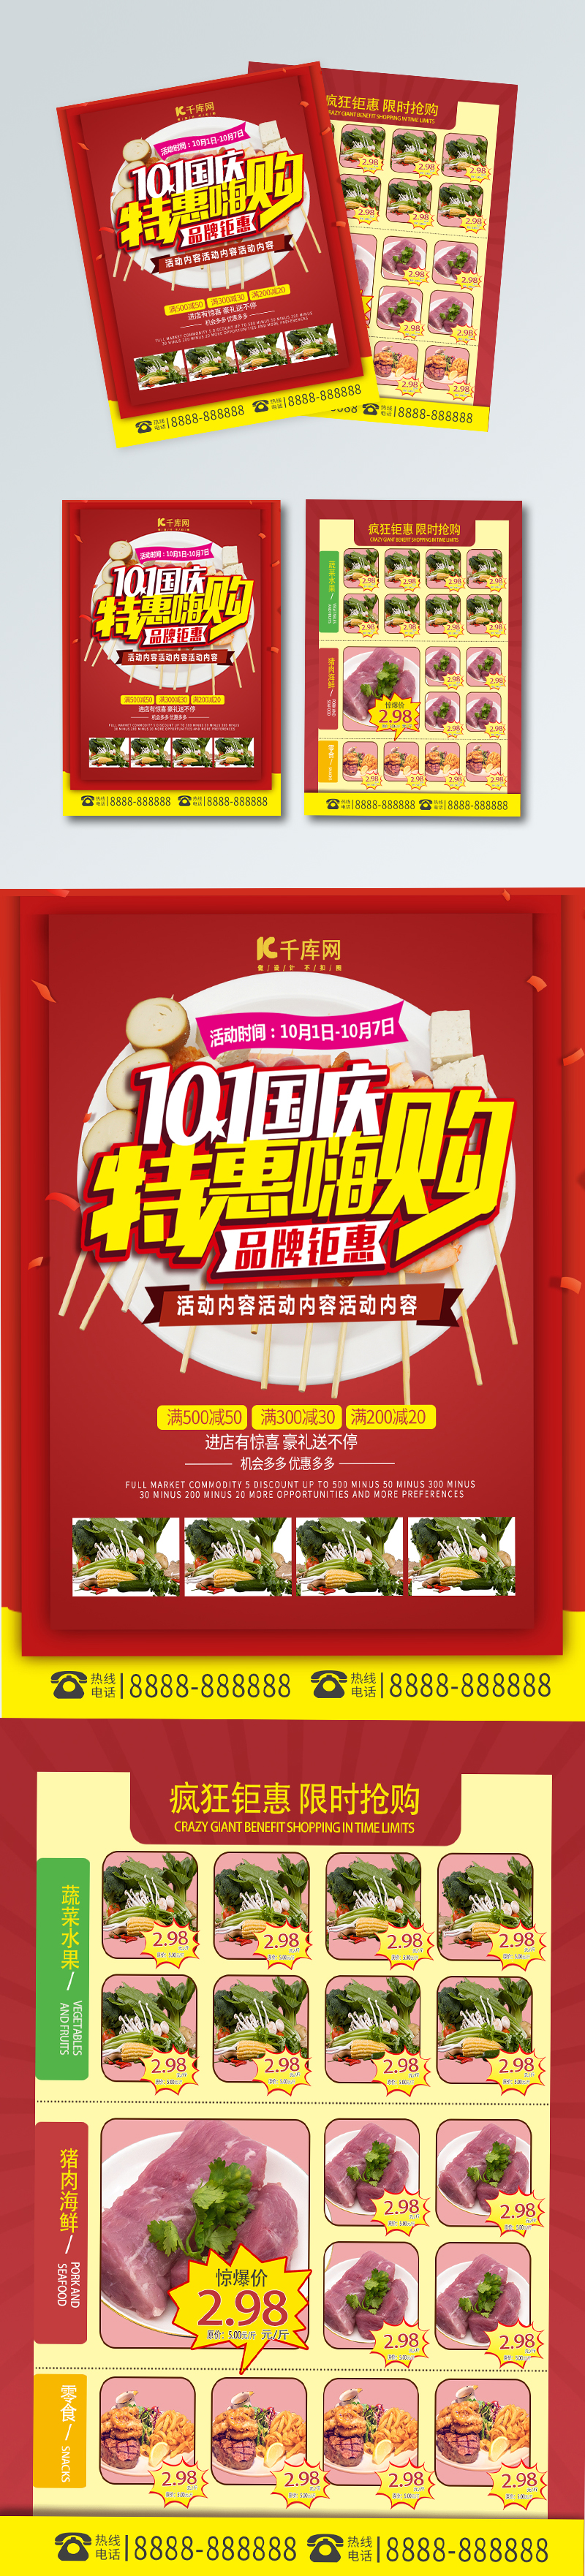 特惠嗨购红色简约剪纸促销美食店超市宣传单图片